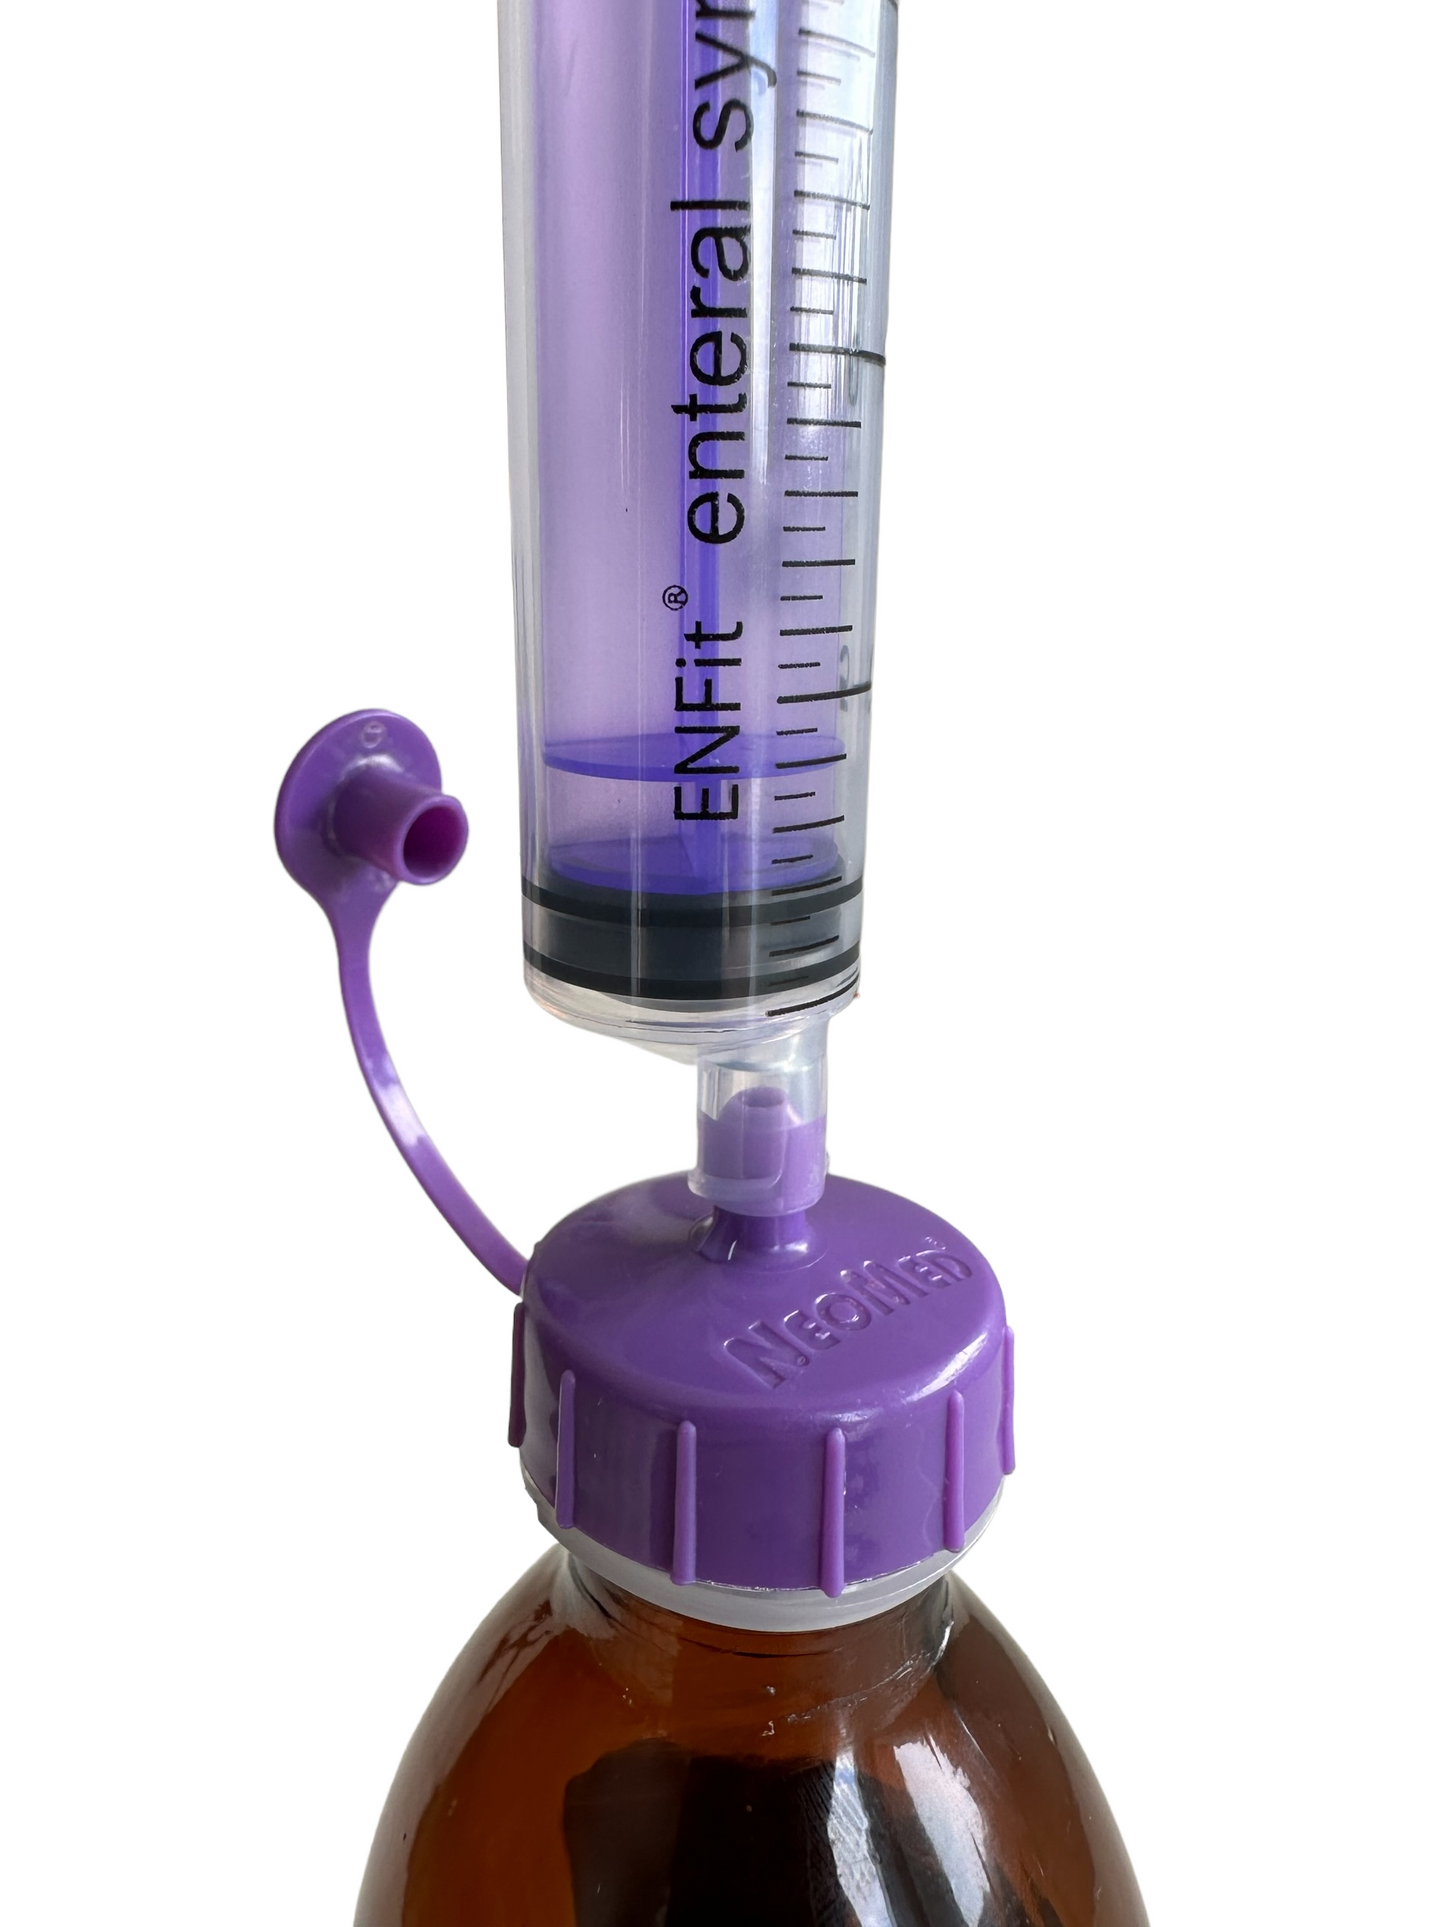 Medication Bottle Syringe Adapter Caps — Avanos (ENFit Compatible)